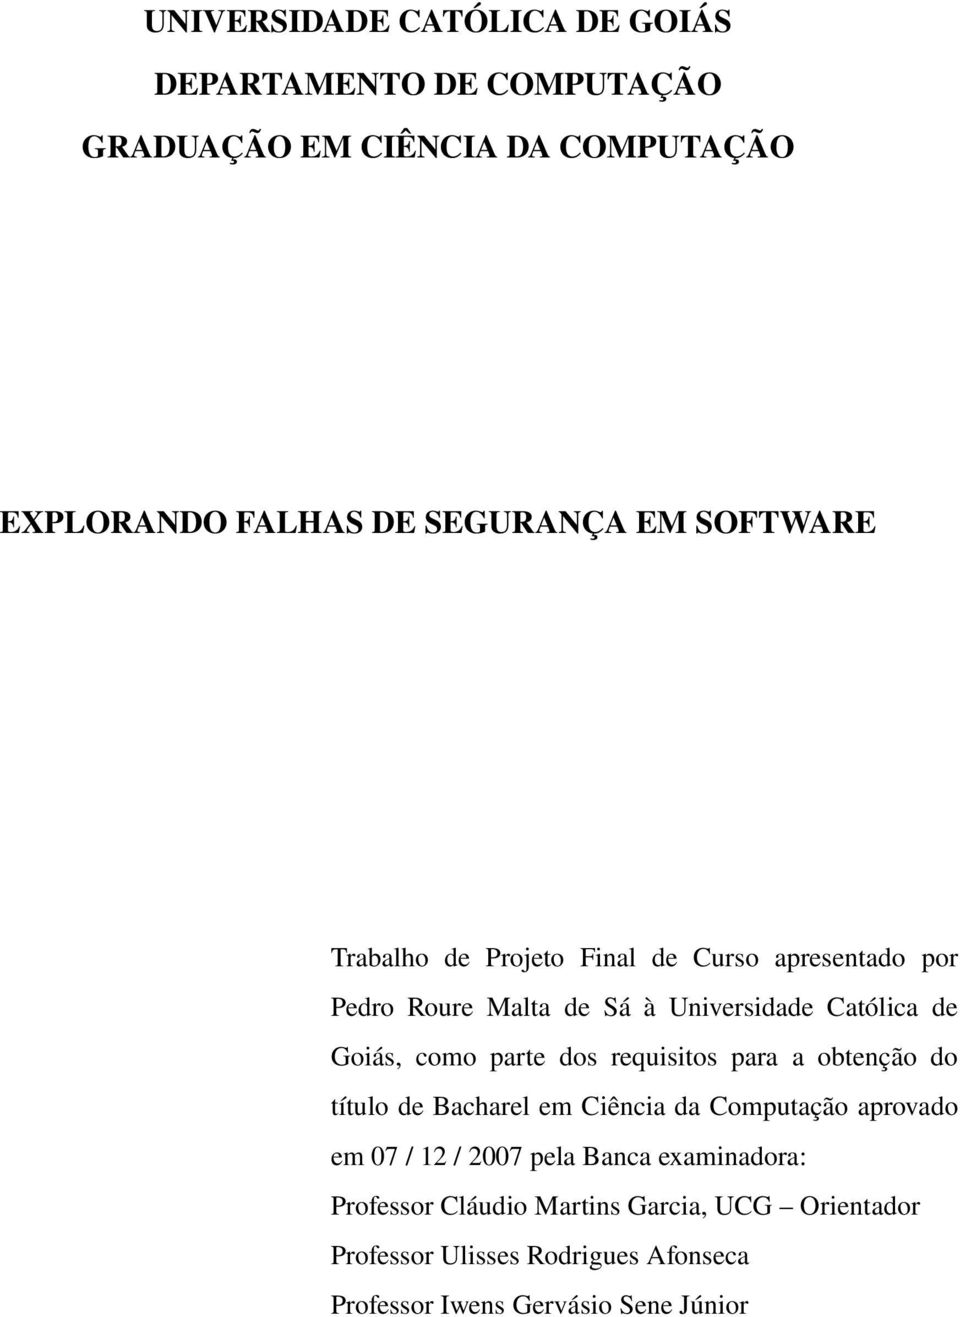 parte dos requisitos para a obtenção do título de Bacharel em Ciência da Computação aprovado em 07 / 12 / 2007 pela Banca